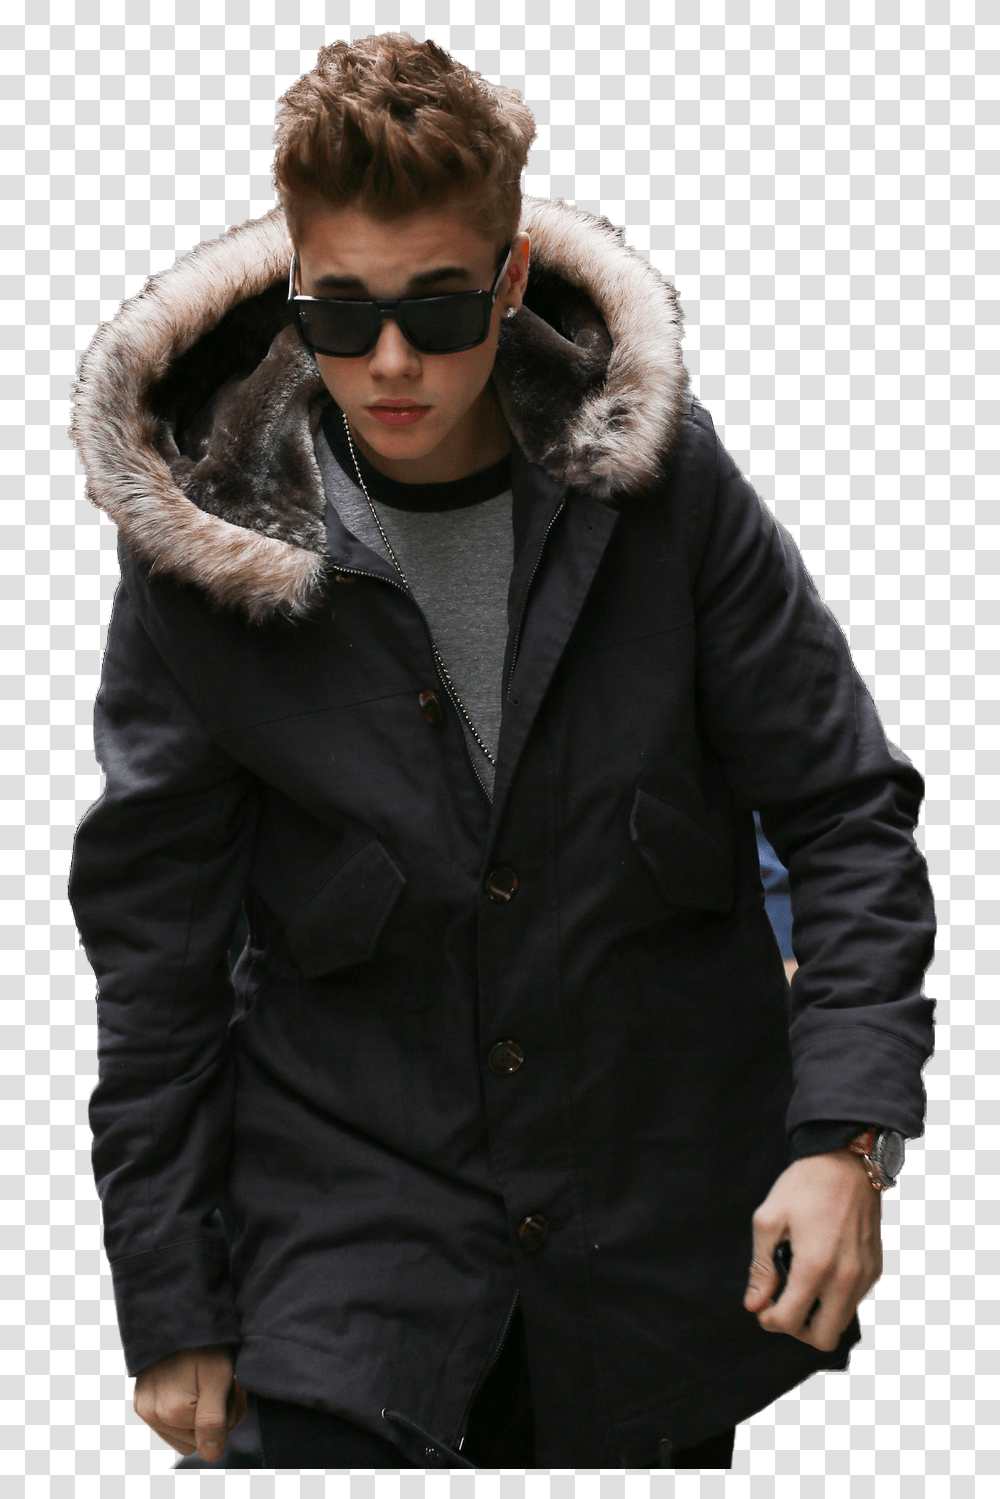 Ambedkar Potho Download Justin Bieber Fur Jacket, Apparel, Sunglasses, Accessories Transparent Png